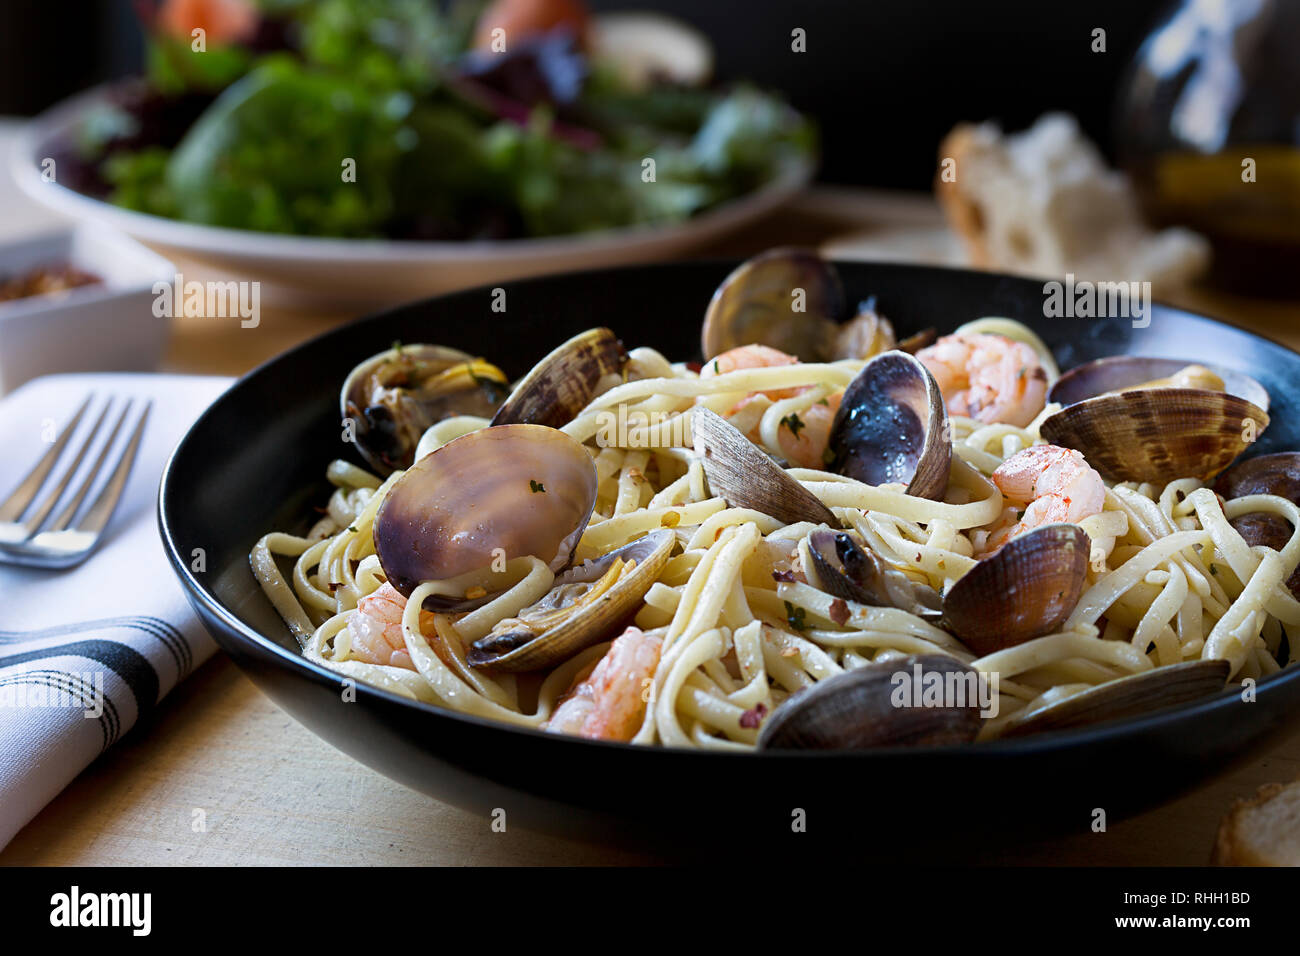 Bol de pâtes spaghetti aux fruits de mer- les palourdes et les crevettes- sur table en bois avec tablier, serviette, et salade d'accompagnement. Banque D'Images